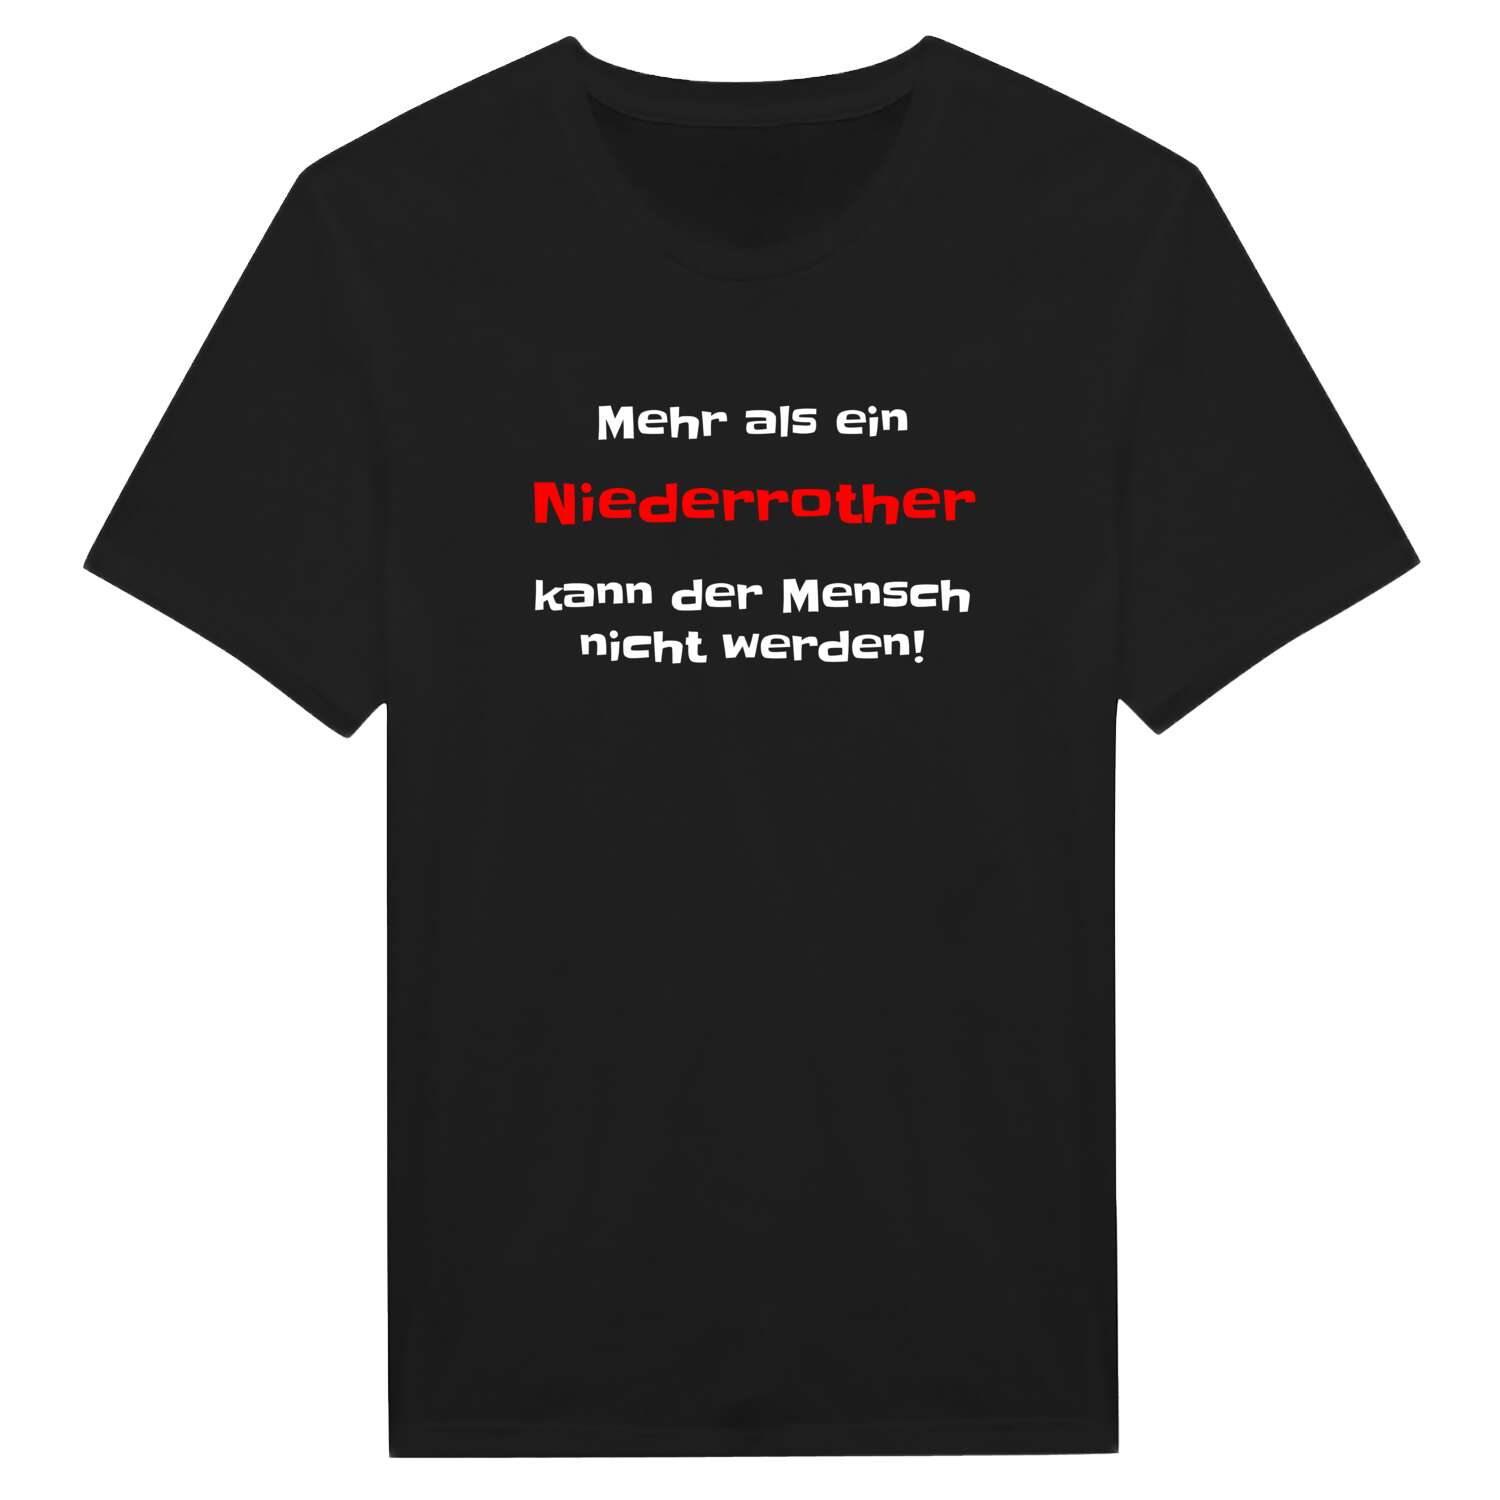 Niederroth T-Shirt »Mehr als ein«